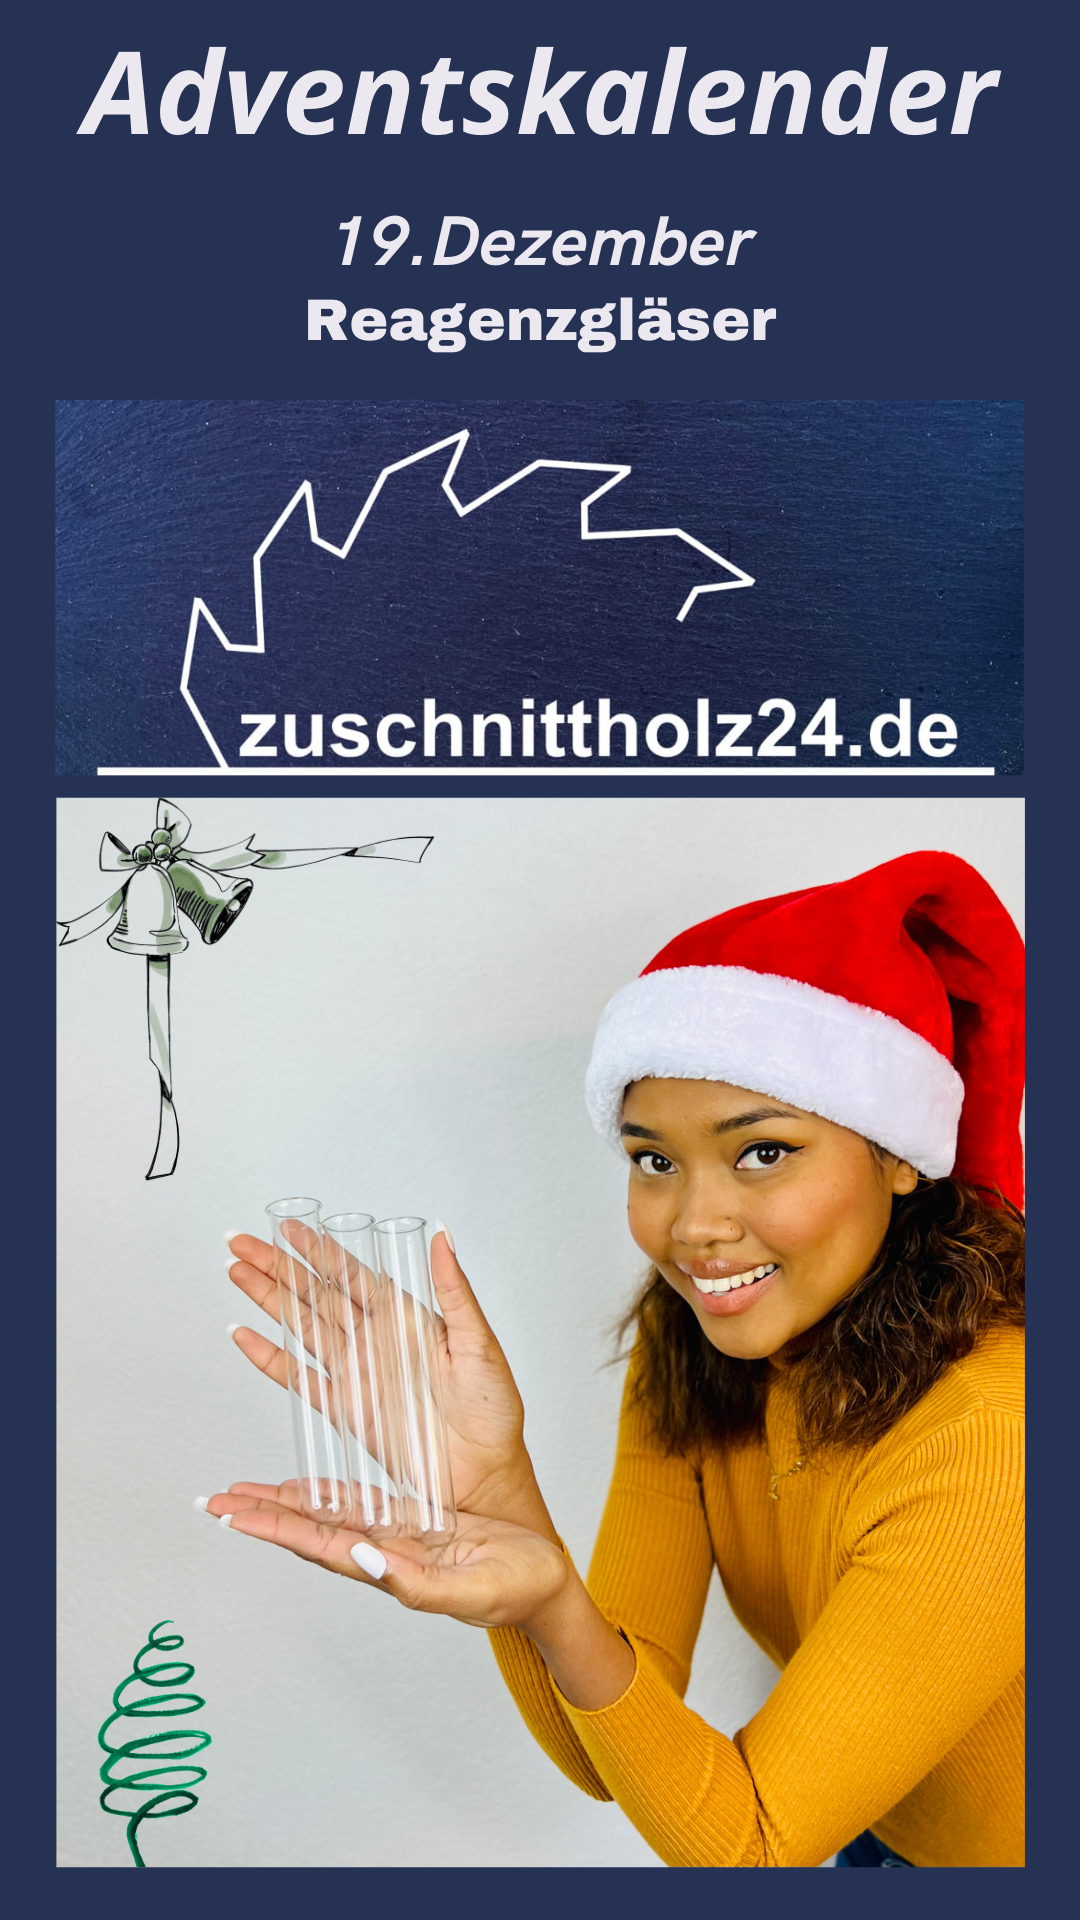 19.Adventskalender_Zuschnittholz24